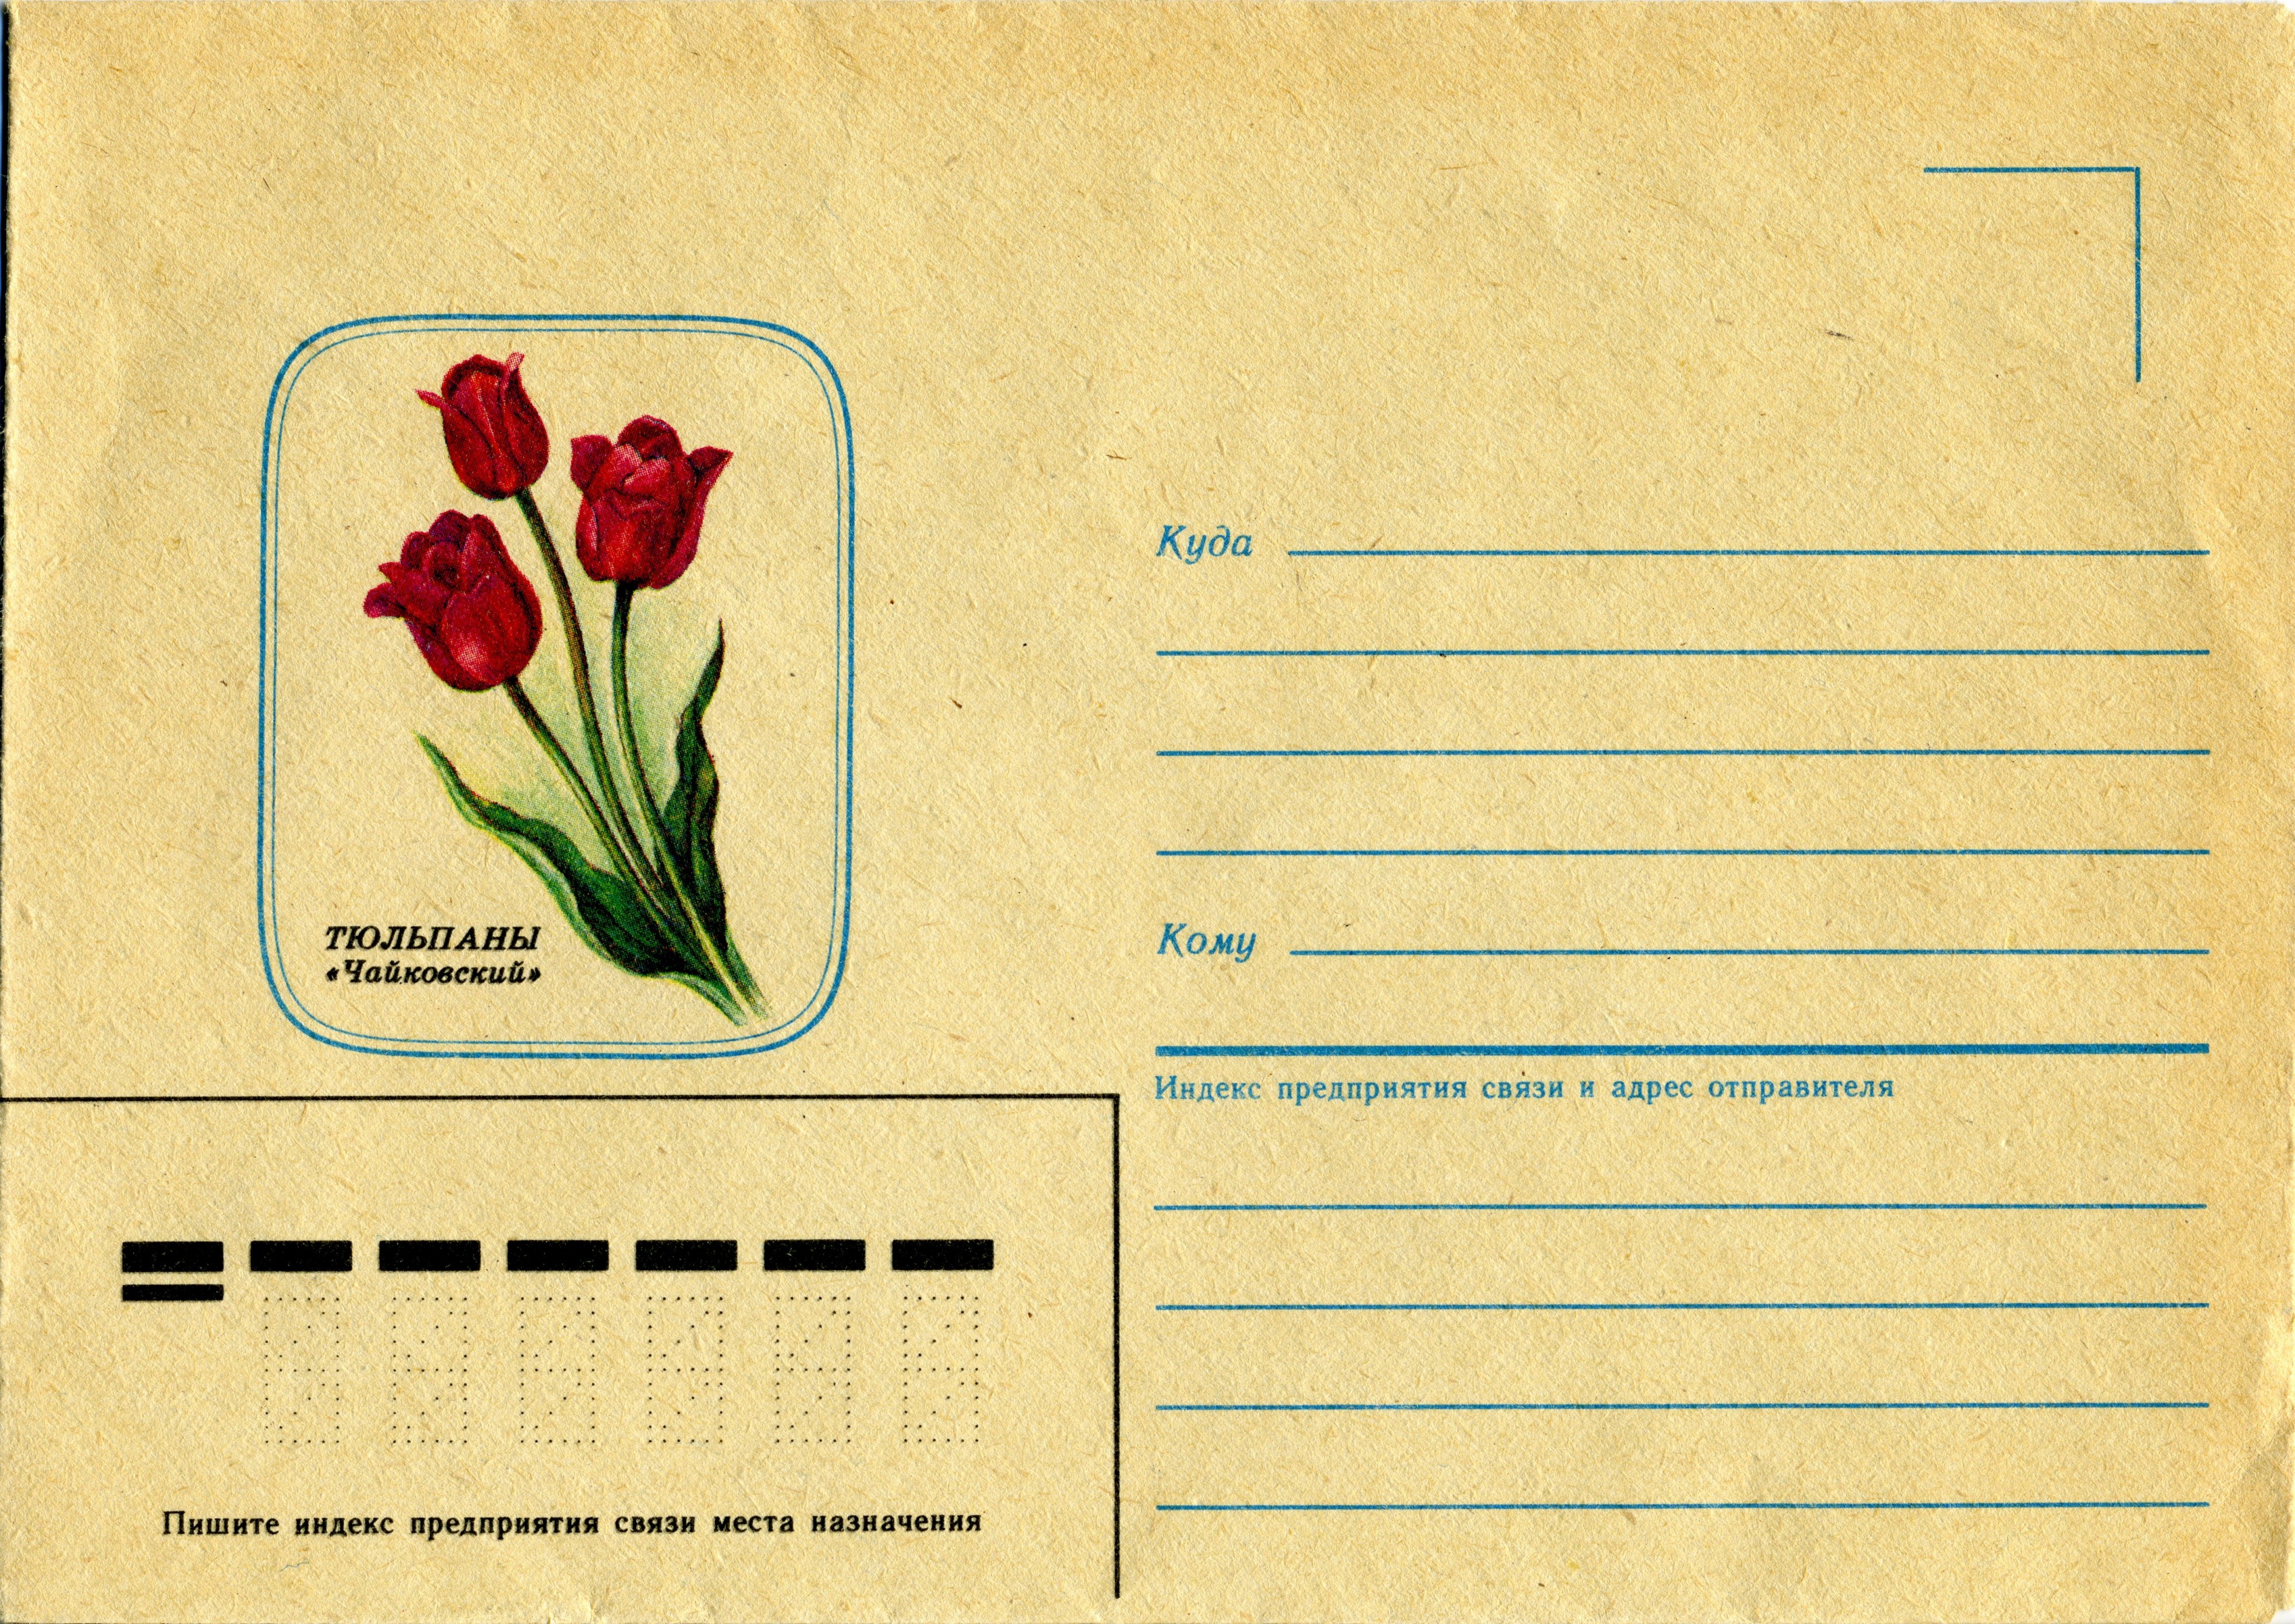 Enveloppe postale décorée soviétique